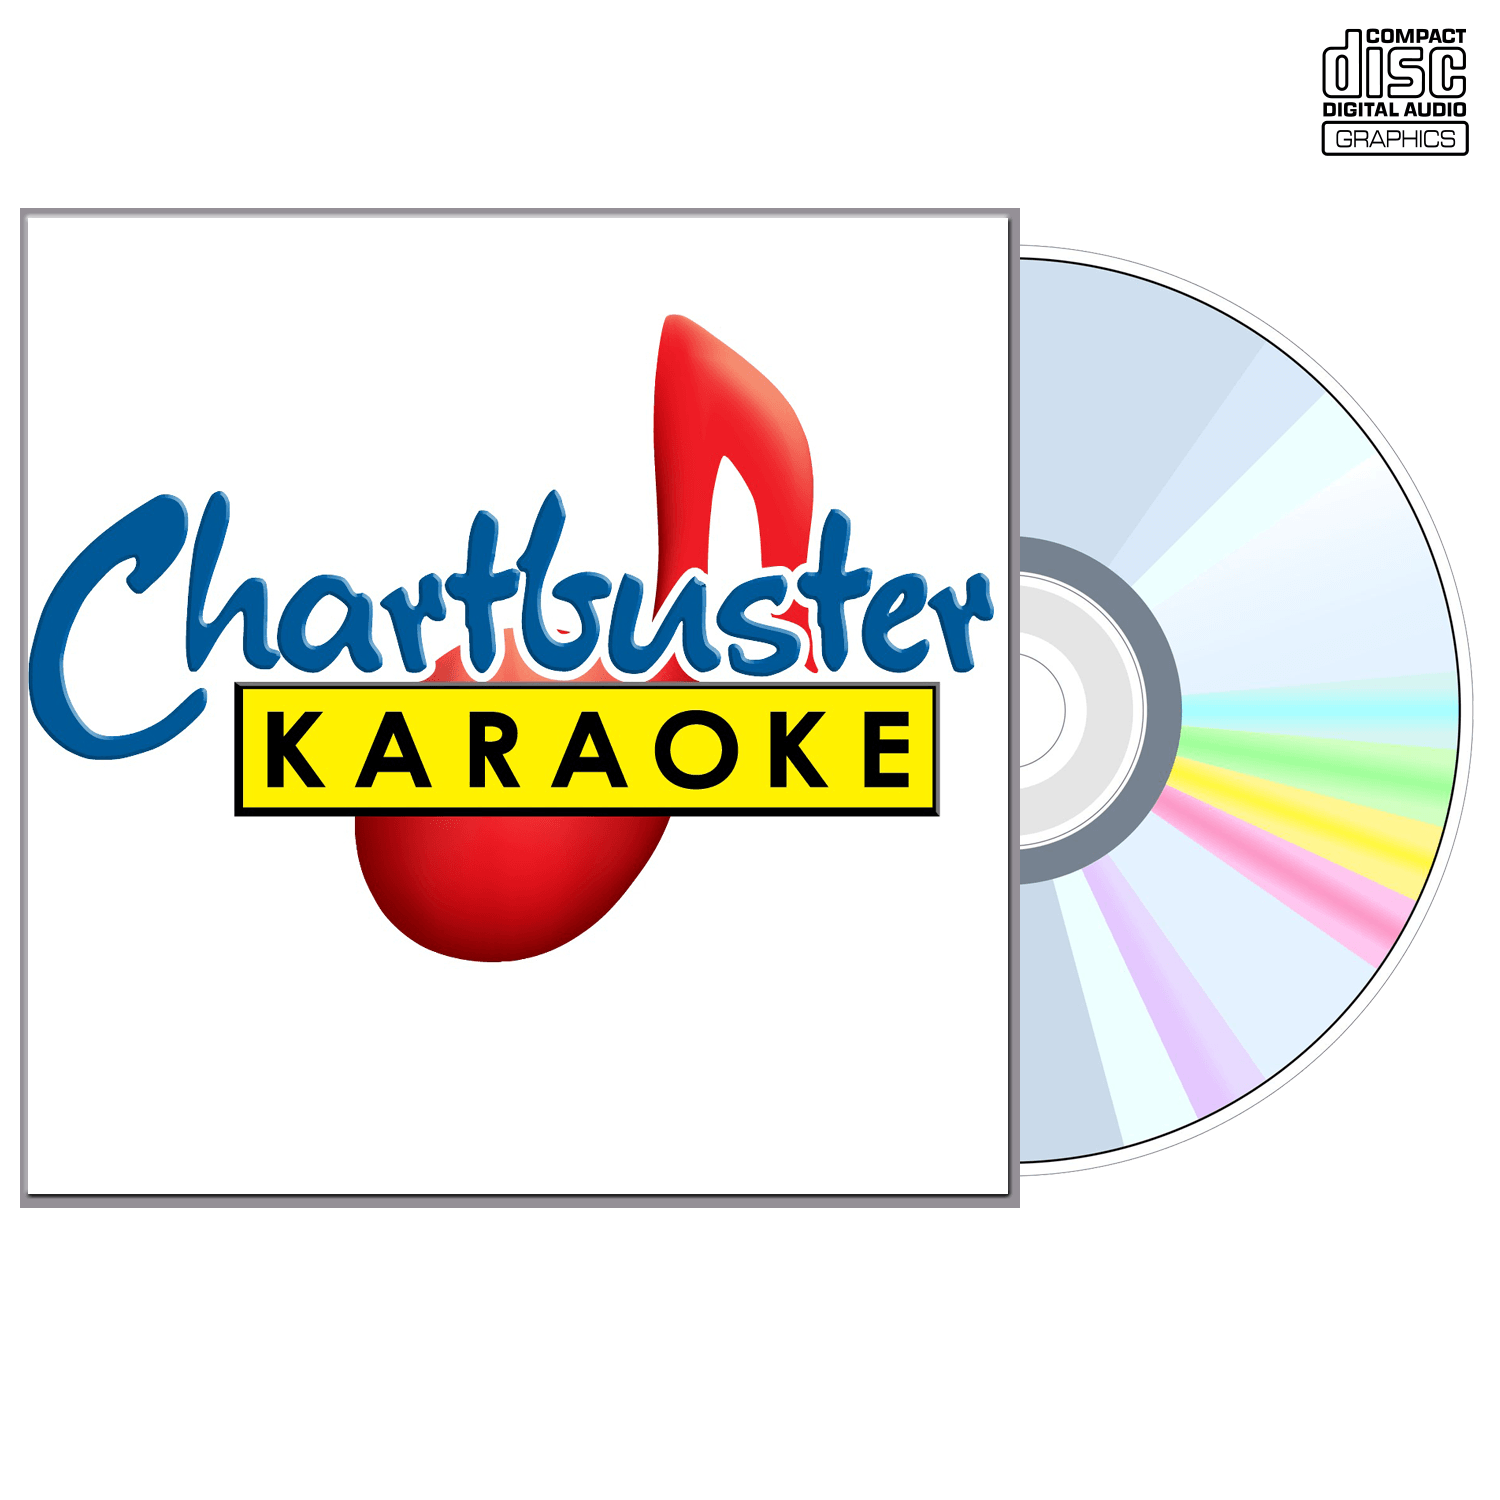 Beatles Vol 2 - CD+G - Chartbuster Karaoke - Karaoke Home Entertainment